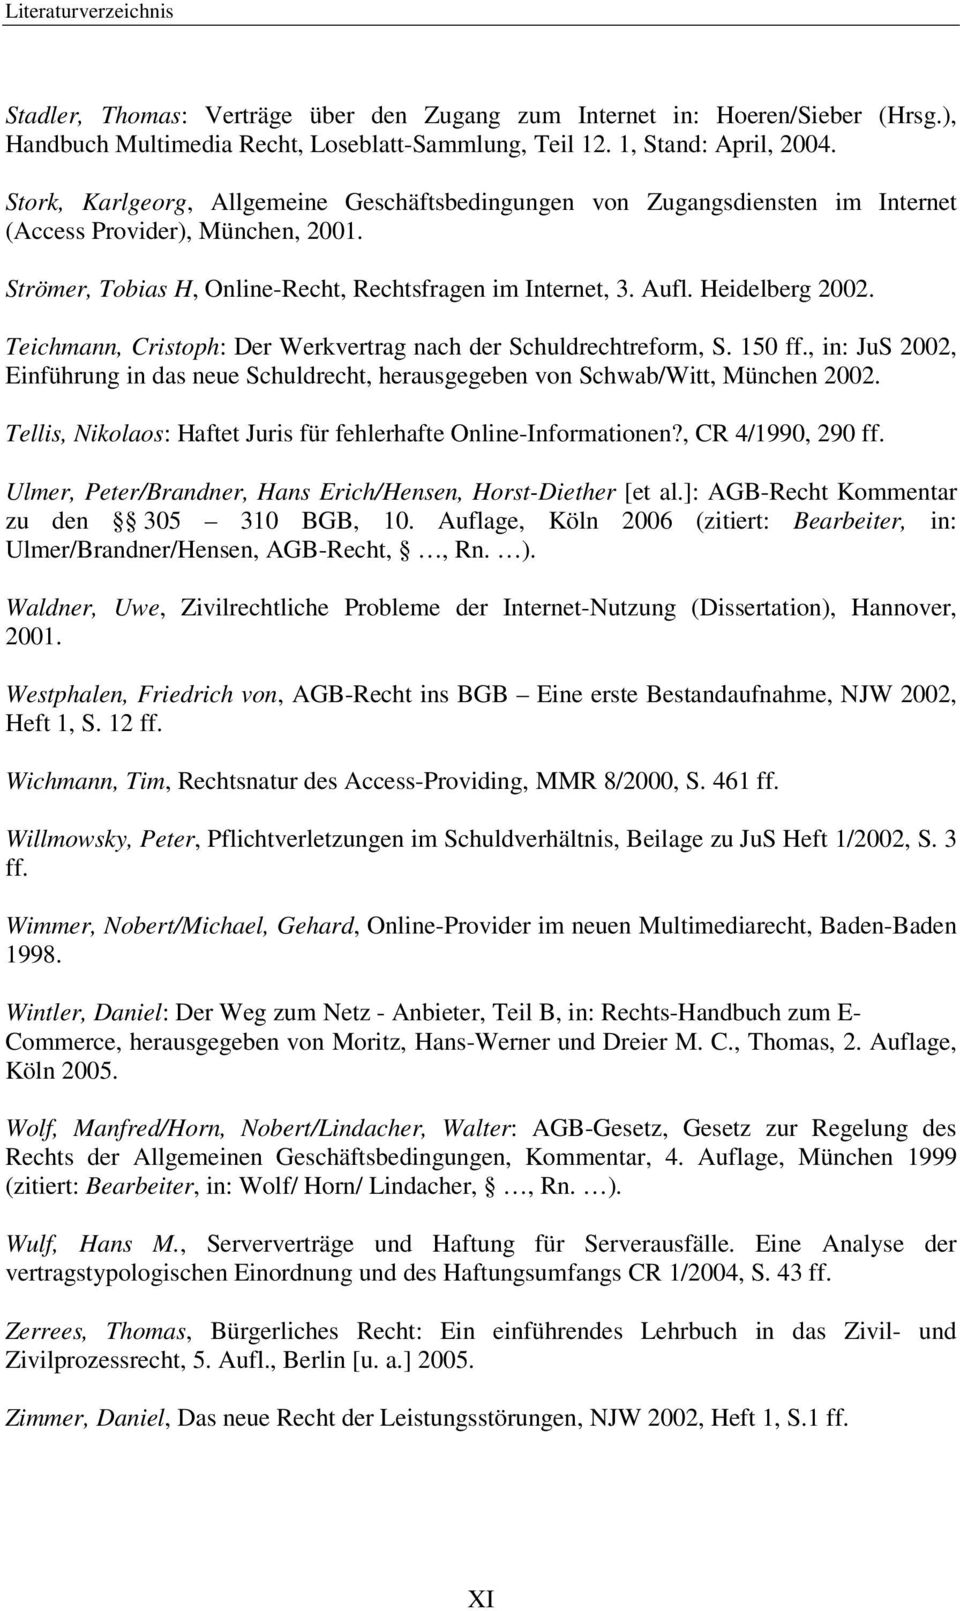 Teichmann, Cristoph: Der Werkvertrag nach der Schuldrechtreform, S. 150 ff., in: JuS 2002, Einführung in das neue Schuldrecht, herausgegeben von Schwab/Witt, München 2002.